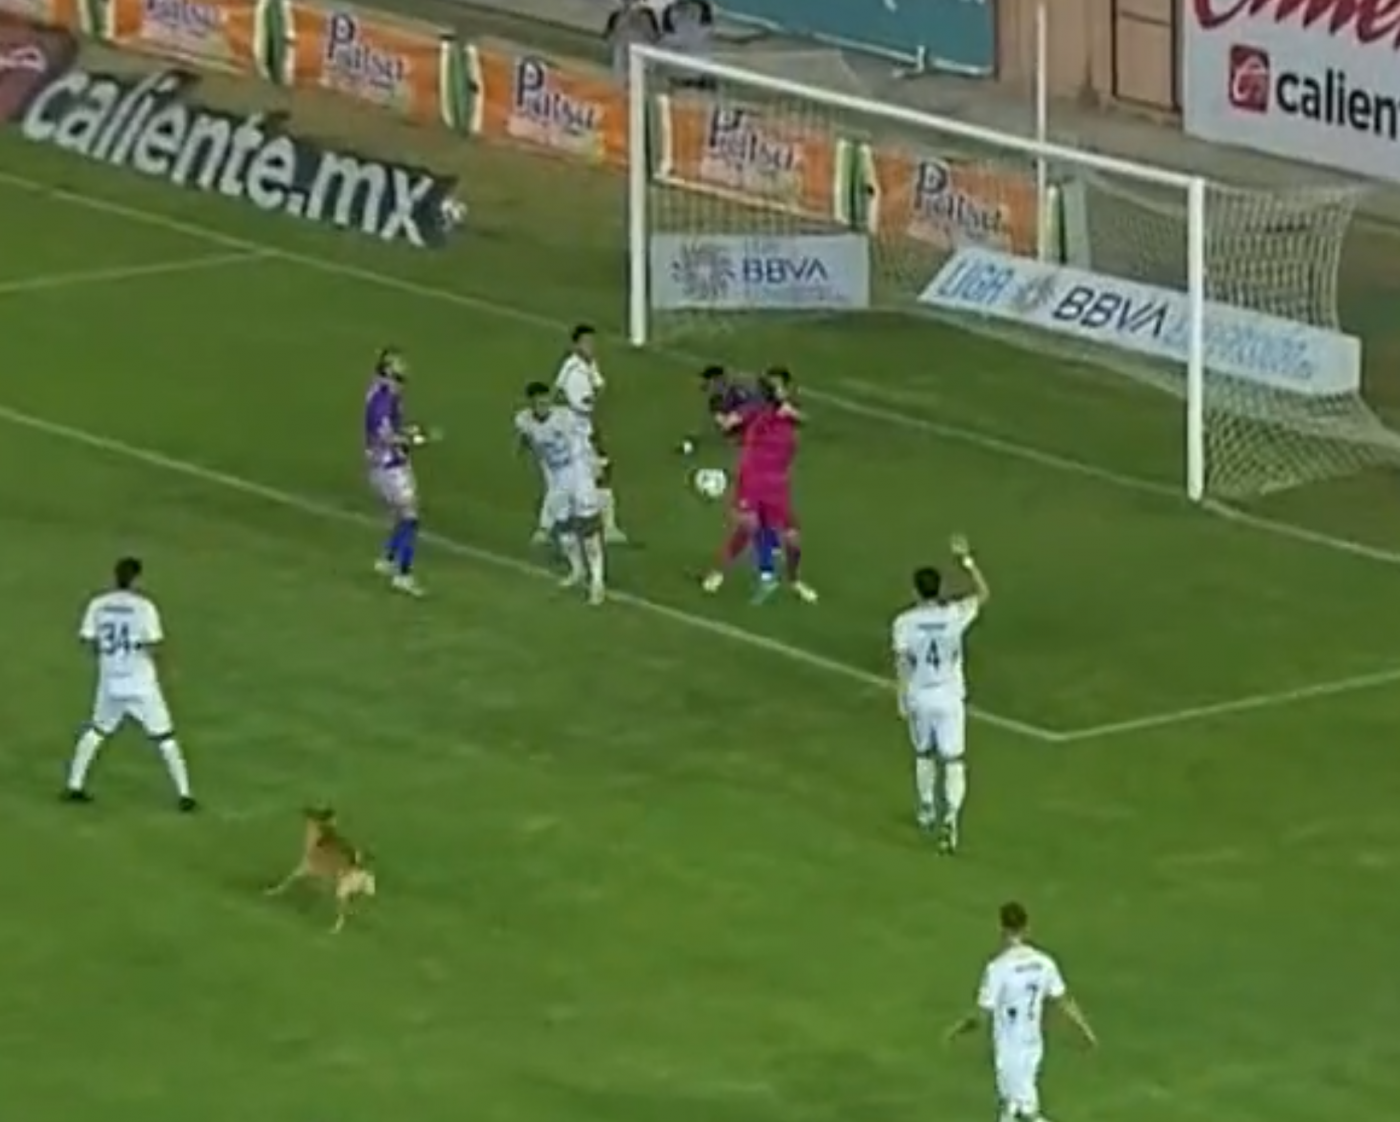 Hond veroorzaakt 'chaos' bij voetbalwedstrijd door bal te stelen en spelers te ontlopen